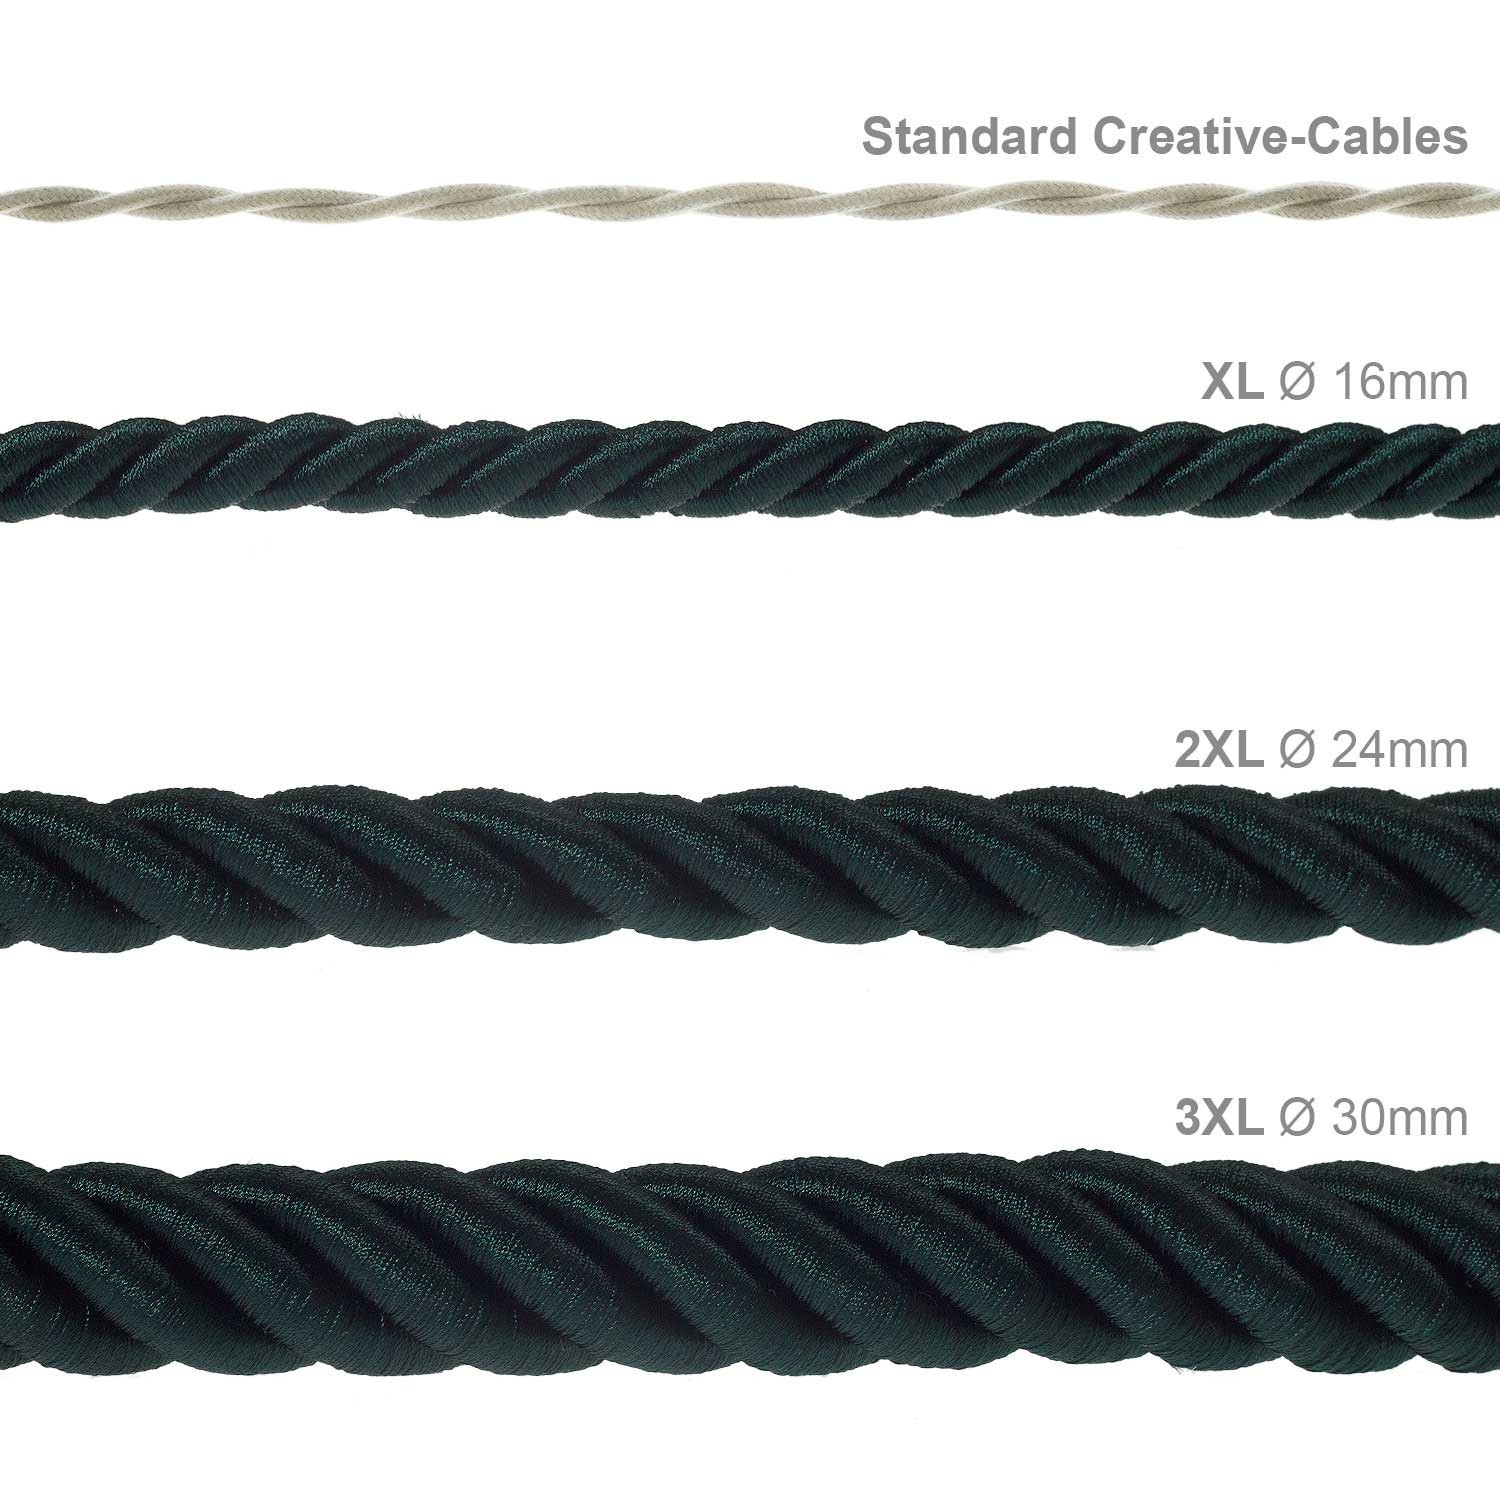 Electrische 2XL touwkabel, 3 x 0,75 mm. Binnenkabels bedekt met donkergroen textiel. Diameter 24 mm.